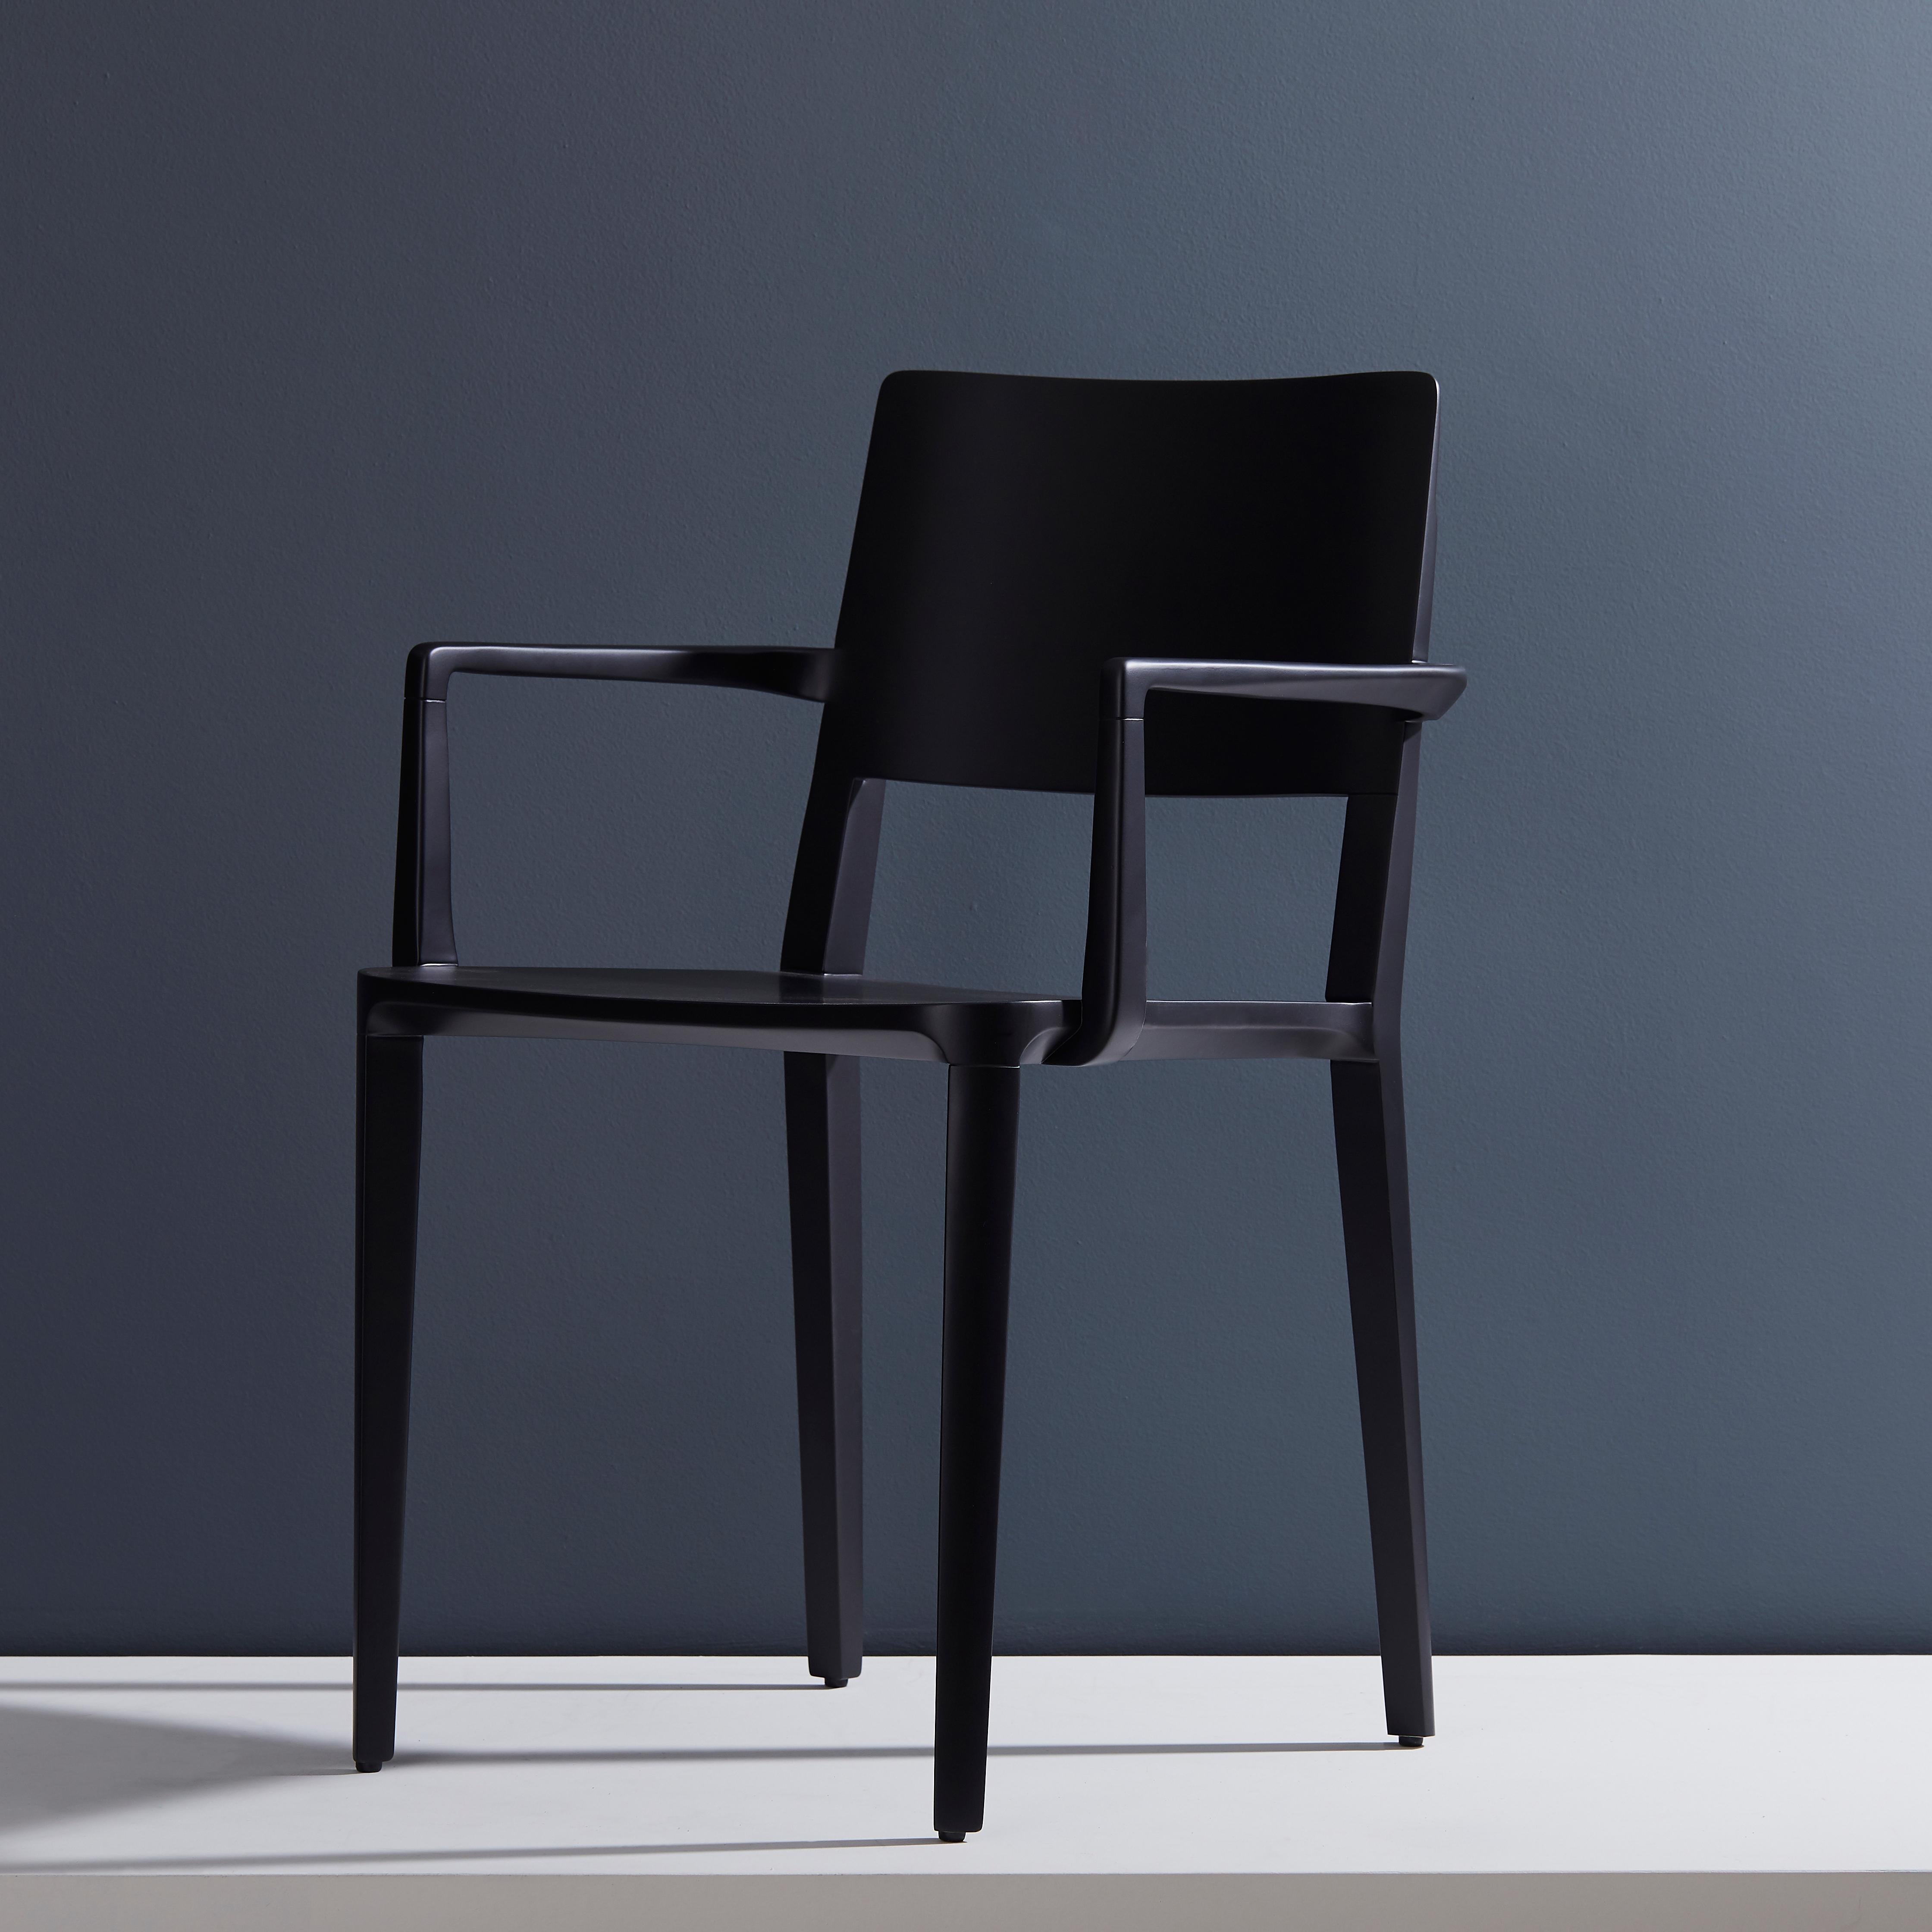 Evo Chair Collection.

Die Kollektion Evo basiert auf der harmonischen Verschmelzung von geometrischen Formen und der modernen Interpretation der Archetypen des Holzes. 

Alle Elemente, aus denen sich der Stuhl zusammensetzt, werden präzise